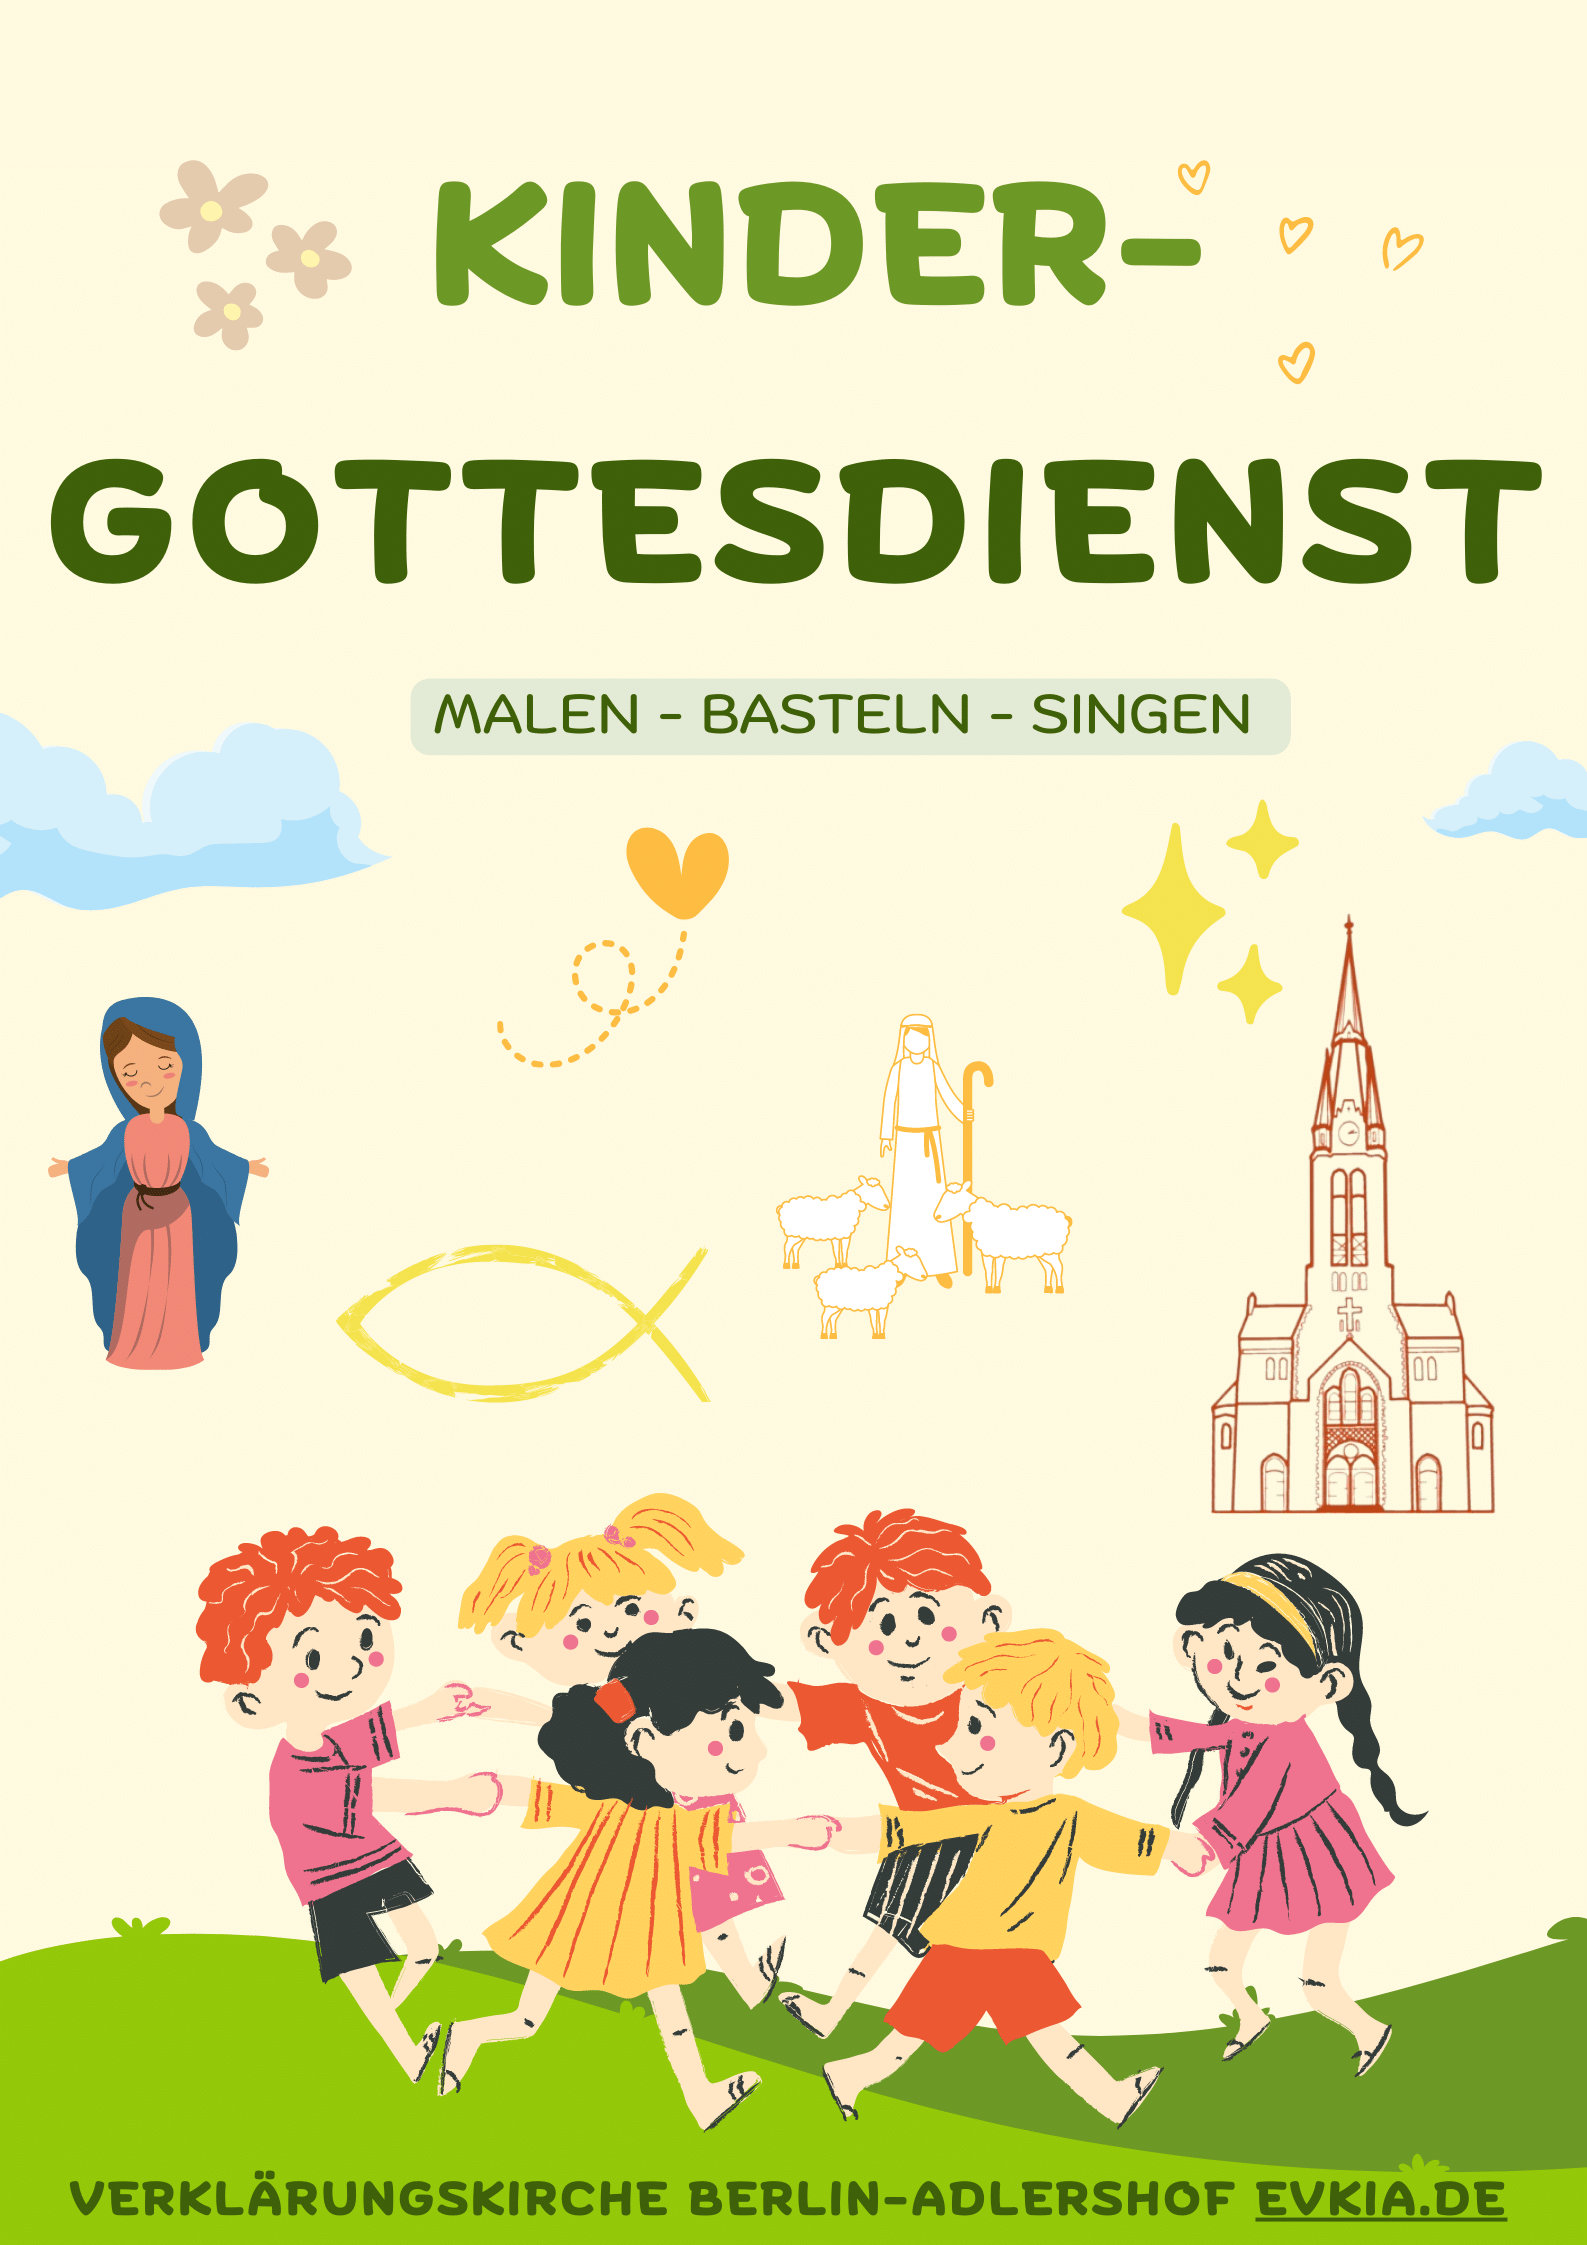 Zu sehen ist ein Flyer mit der einladung zum Kindergottesdienst in der Verklärungskirche Berlin-Adlershof